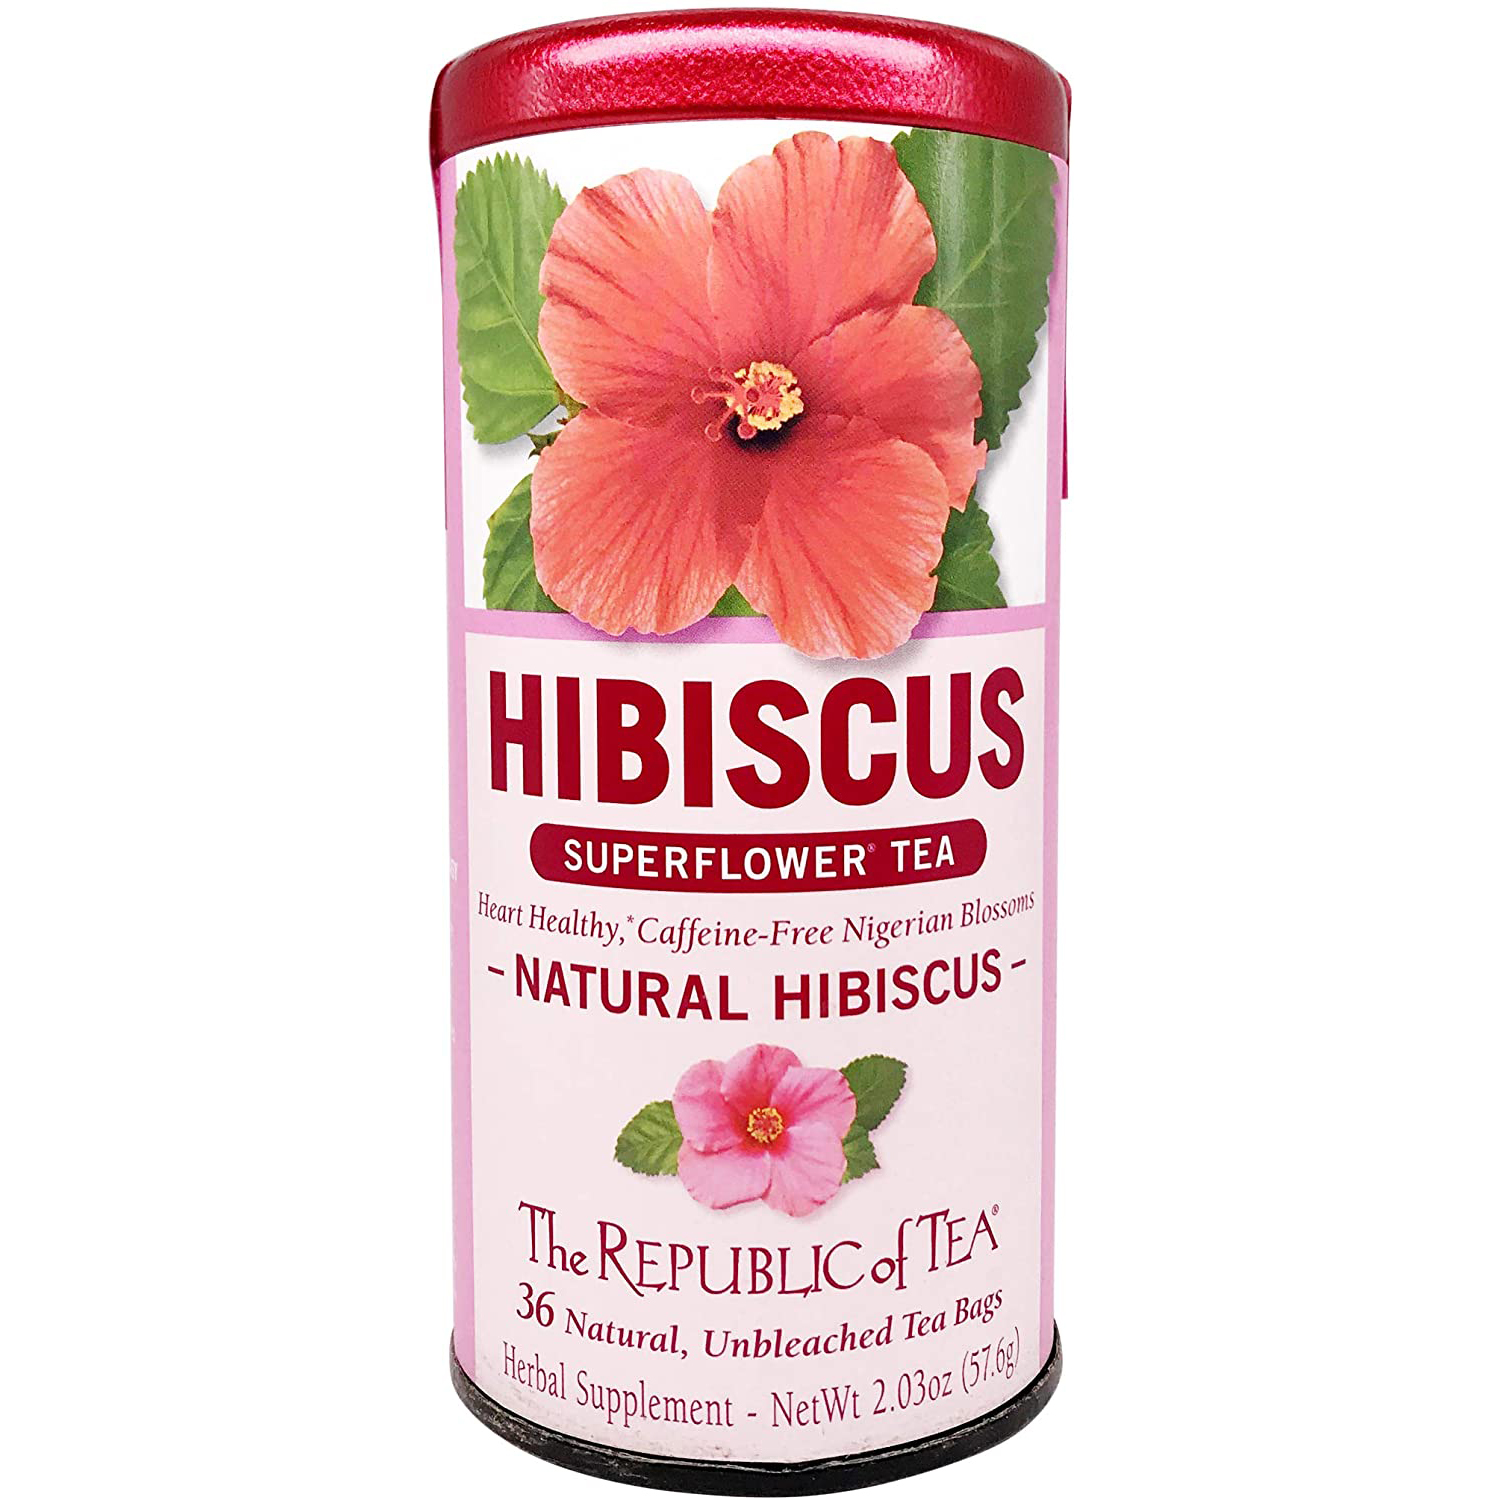 The Republic of Tea Natural Hibiscus Superflower Tea.